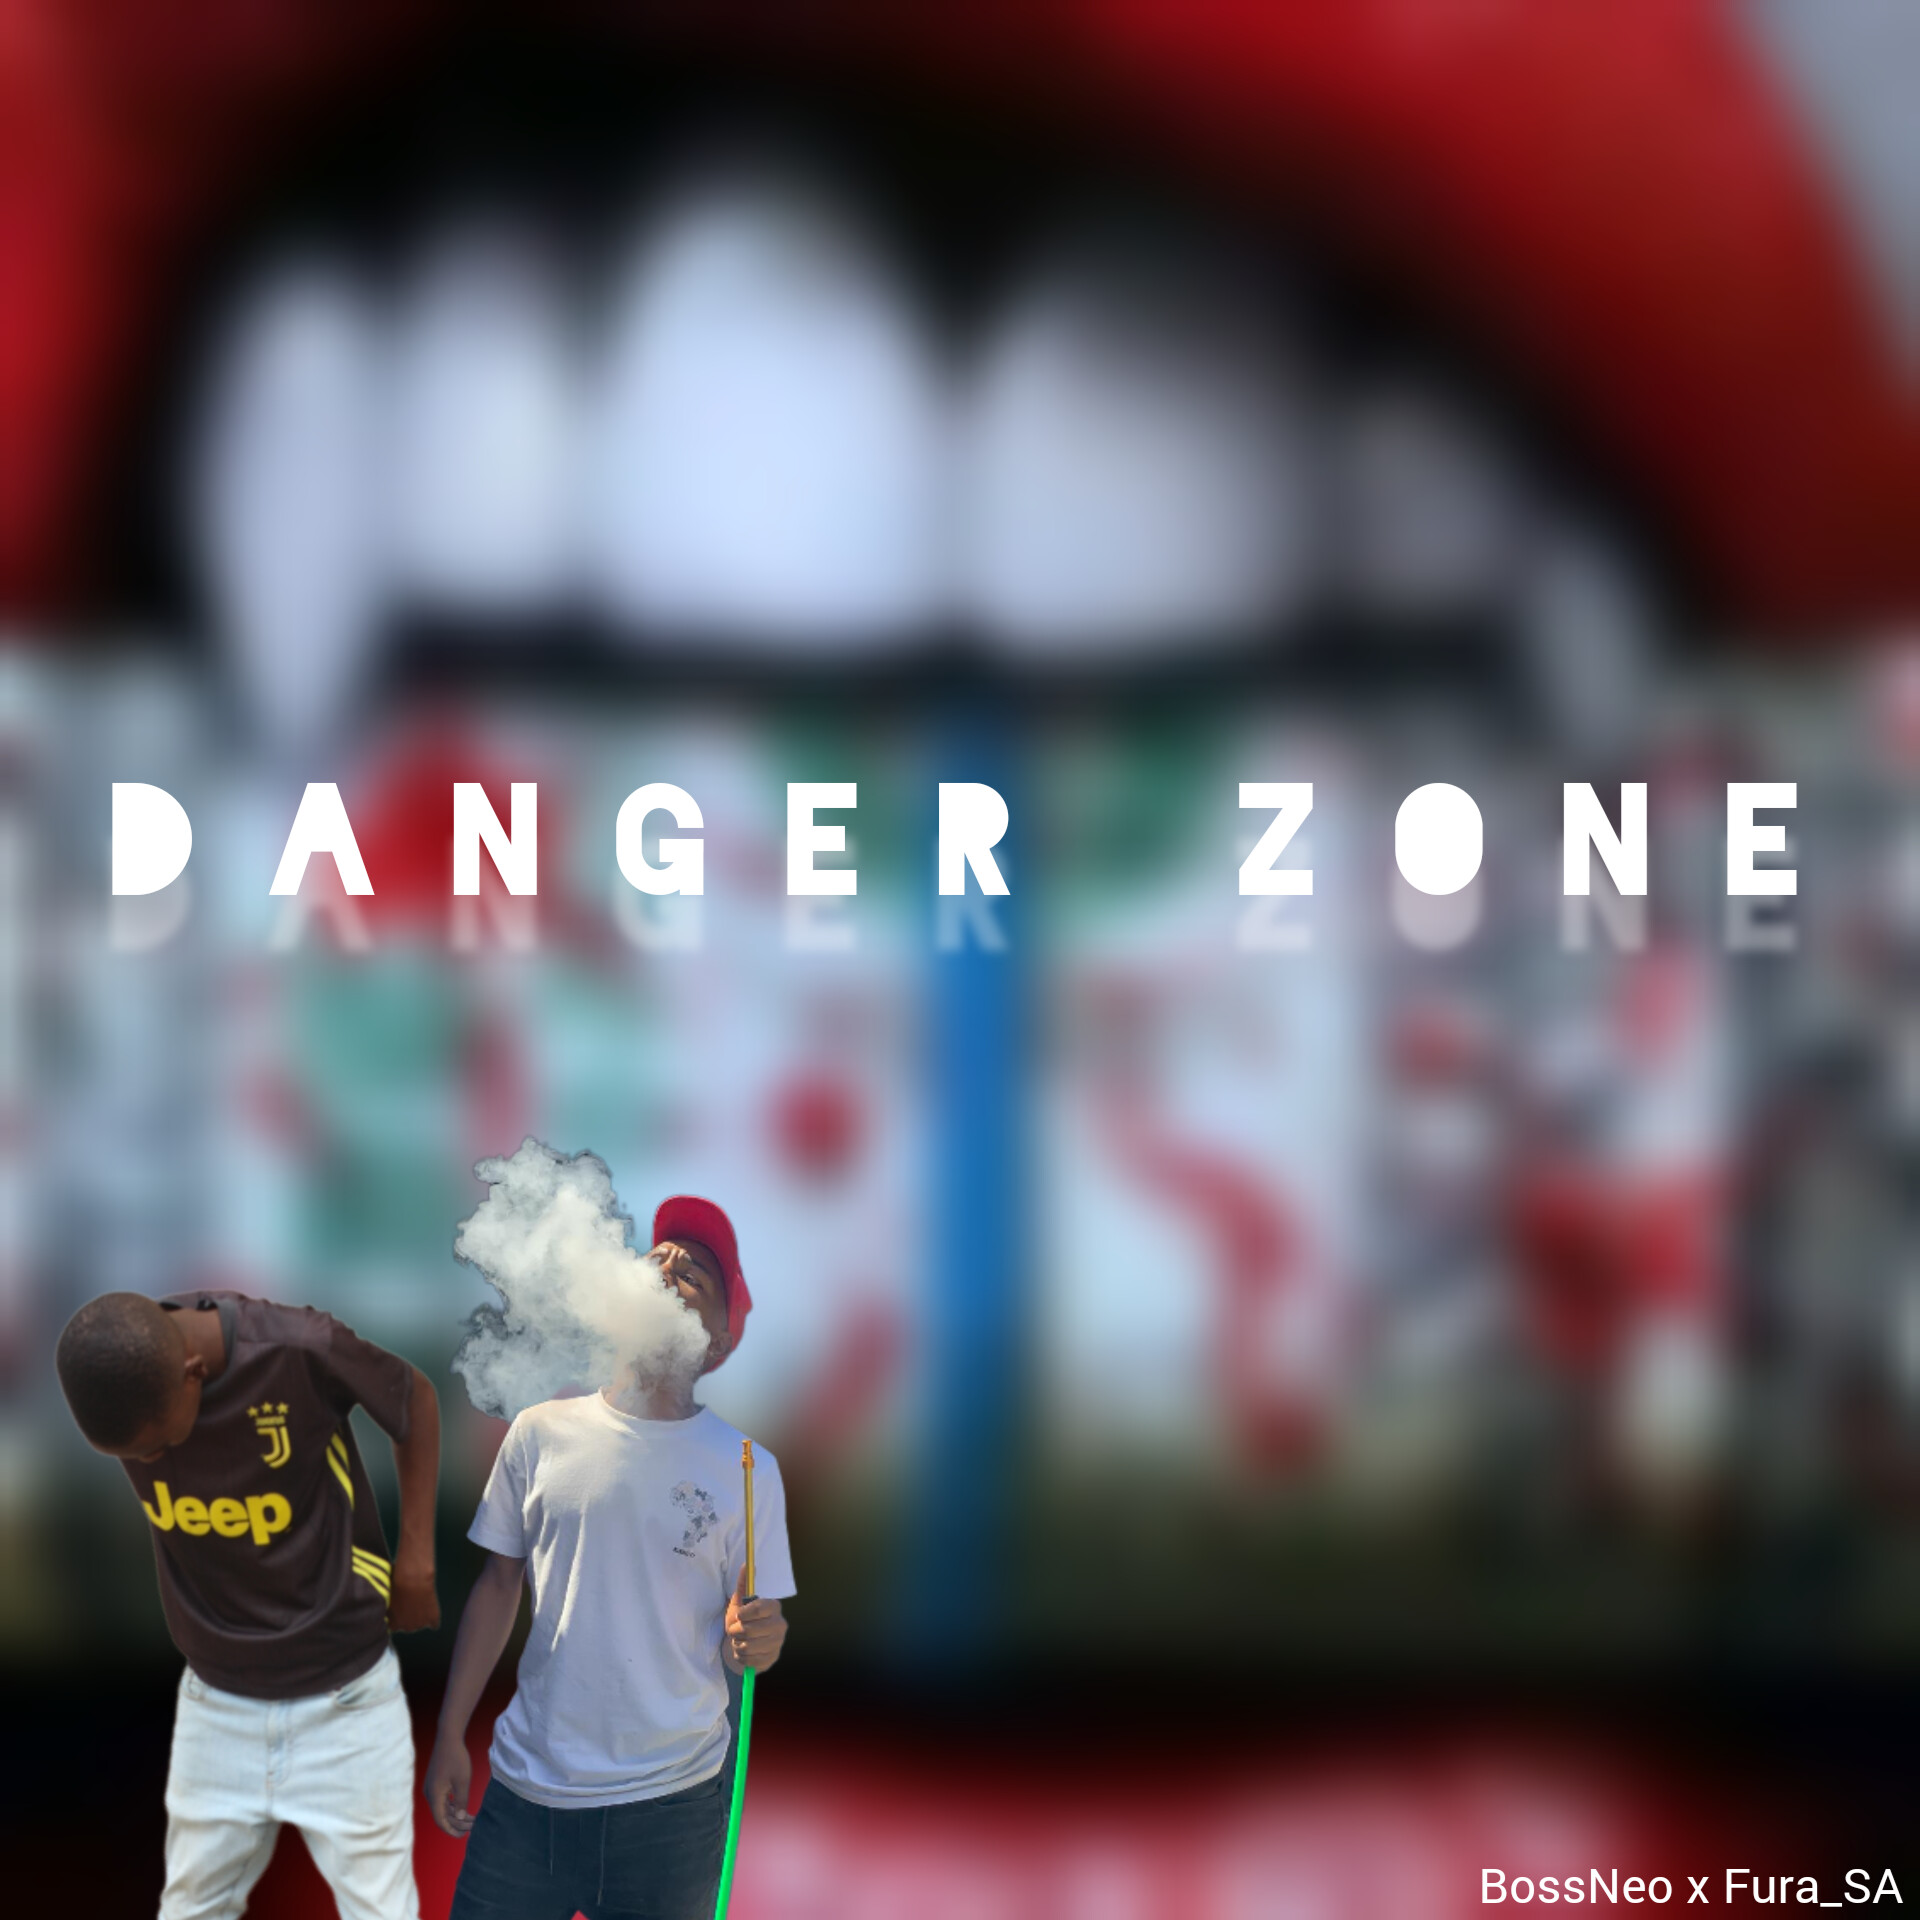 Danger zone - BossNeo x Fura_SA